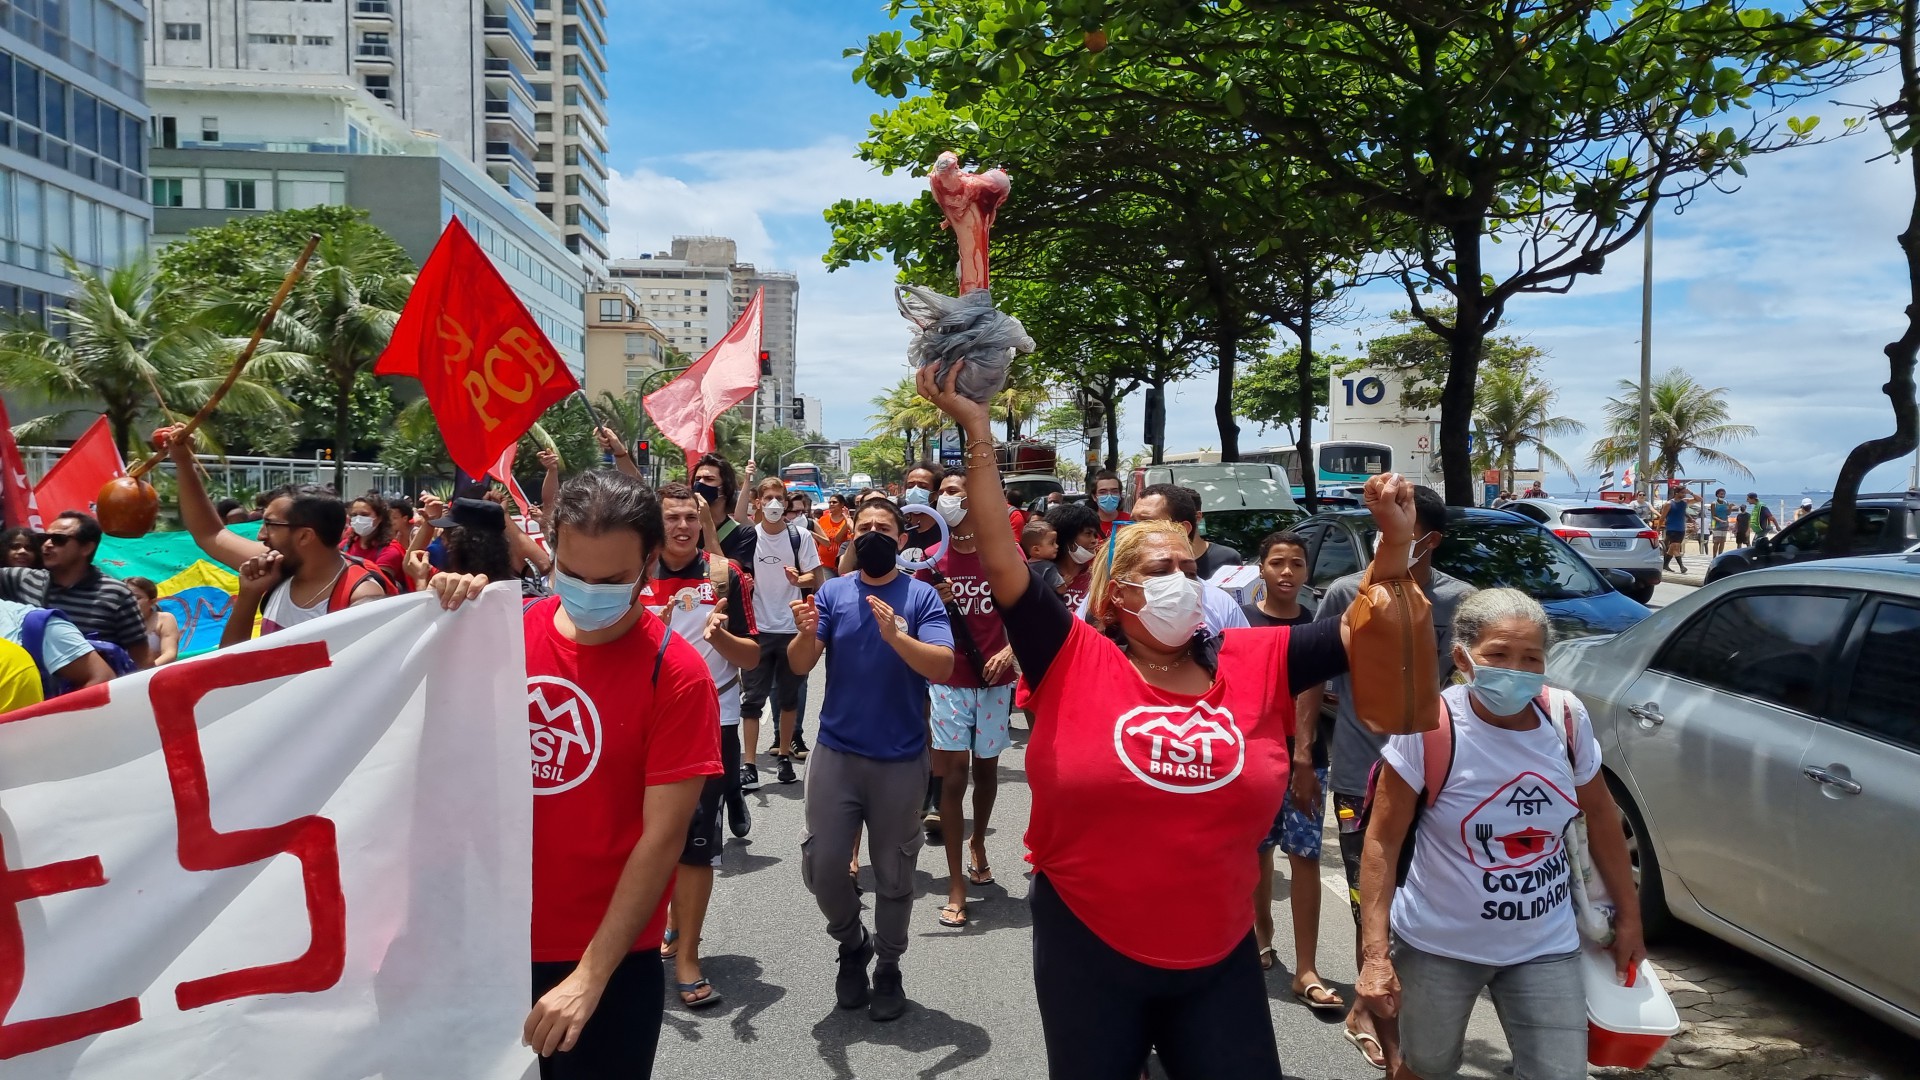 Marcha contra a fome acontece em diversas cidades do Brasil - AgNews